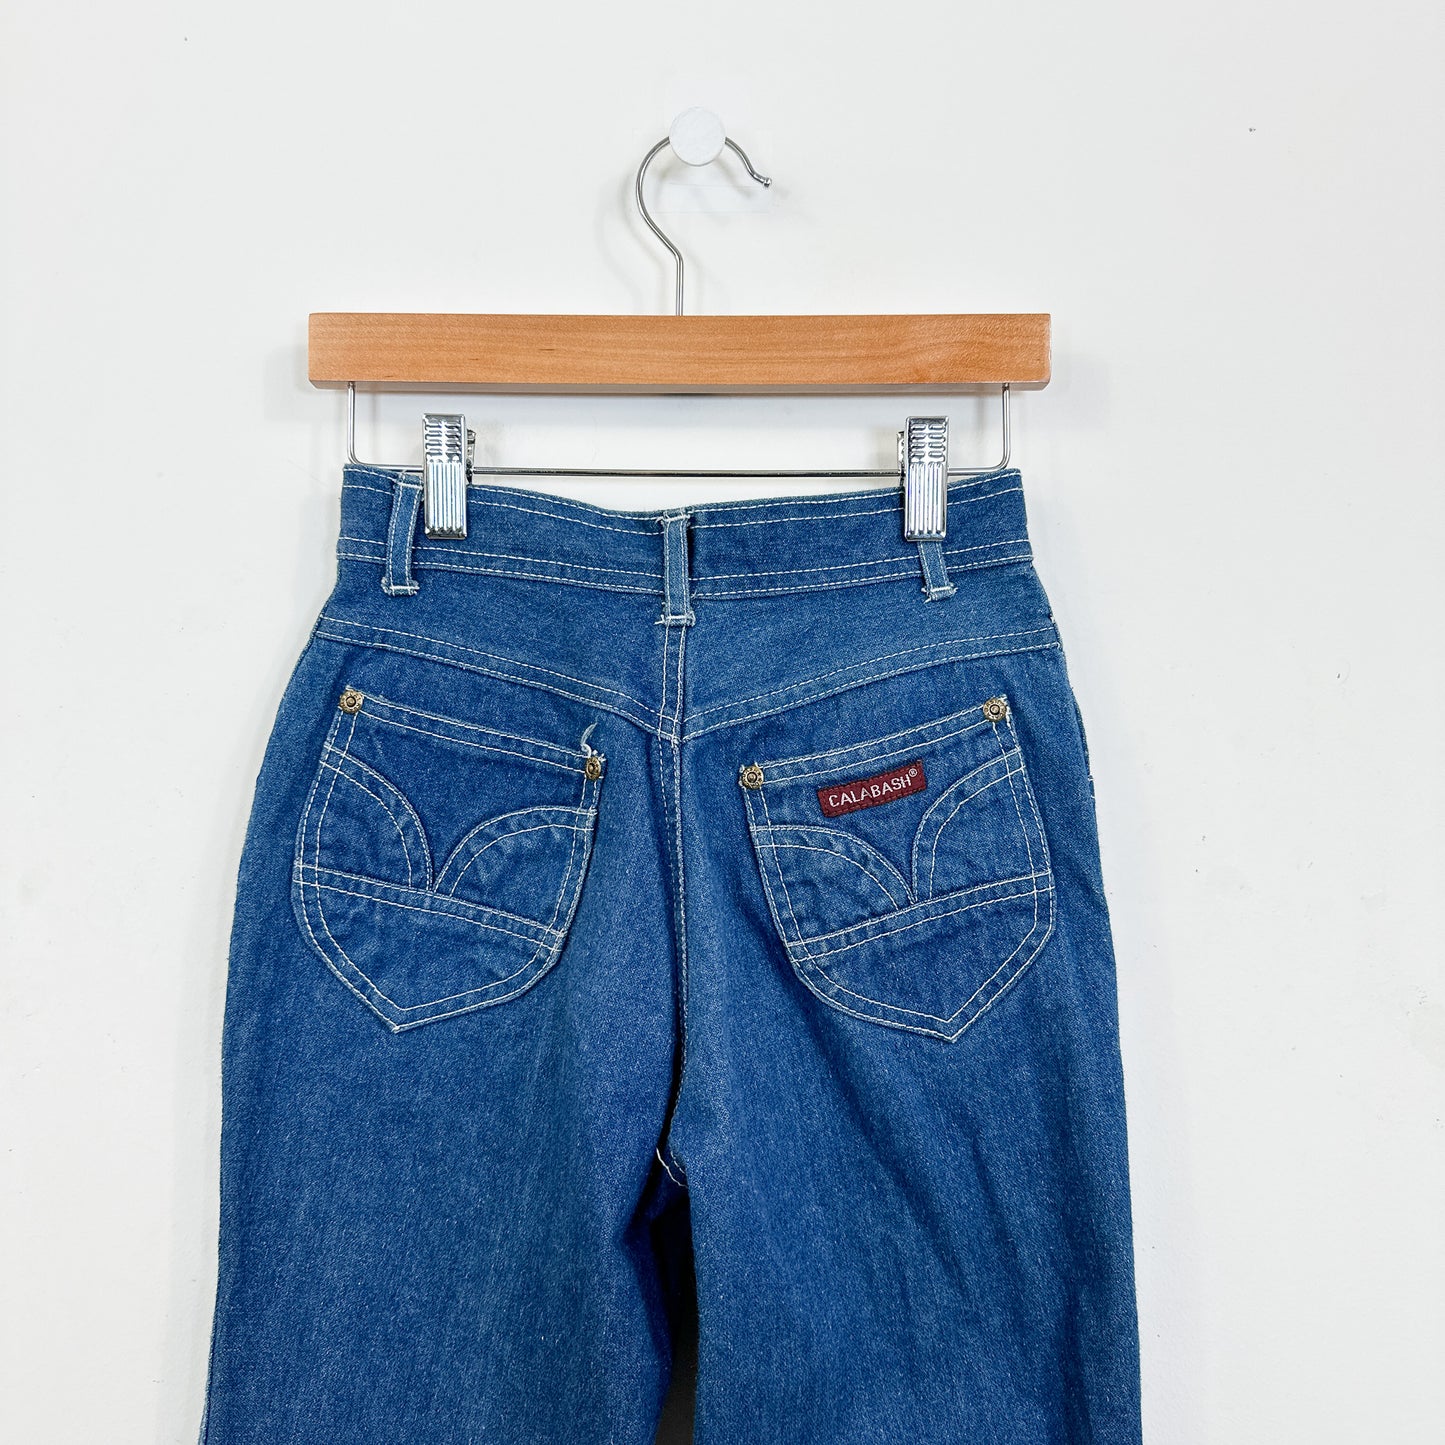 70's Vintage Kids Calabash Jeans - Size 10yr